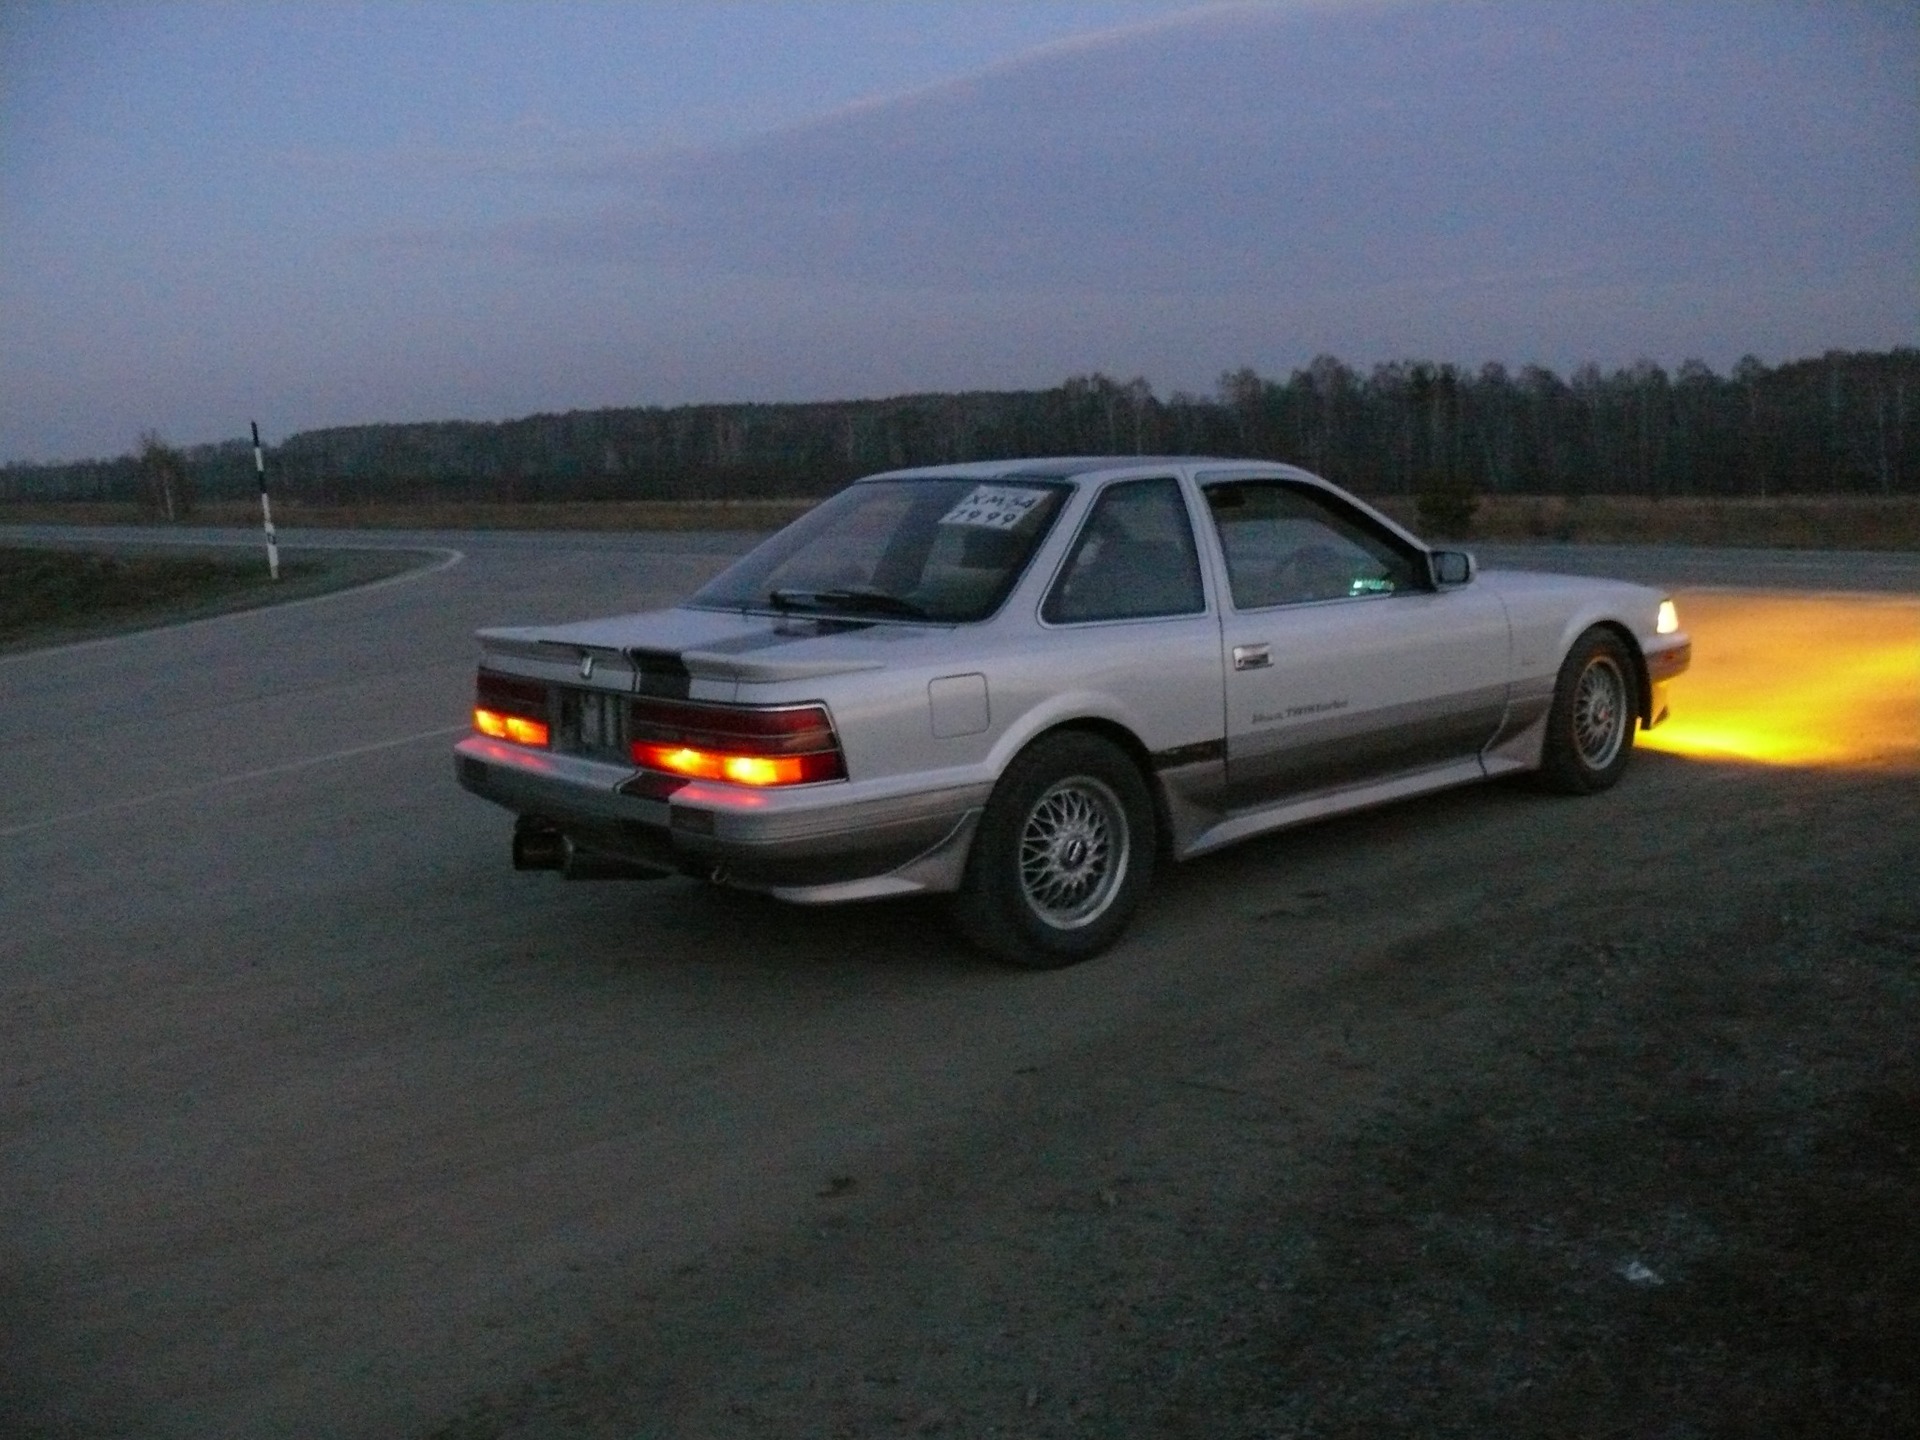    Toyota Soarer 25 1990